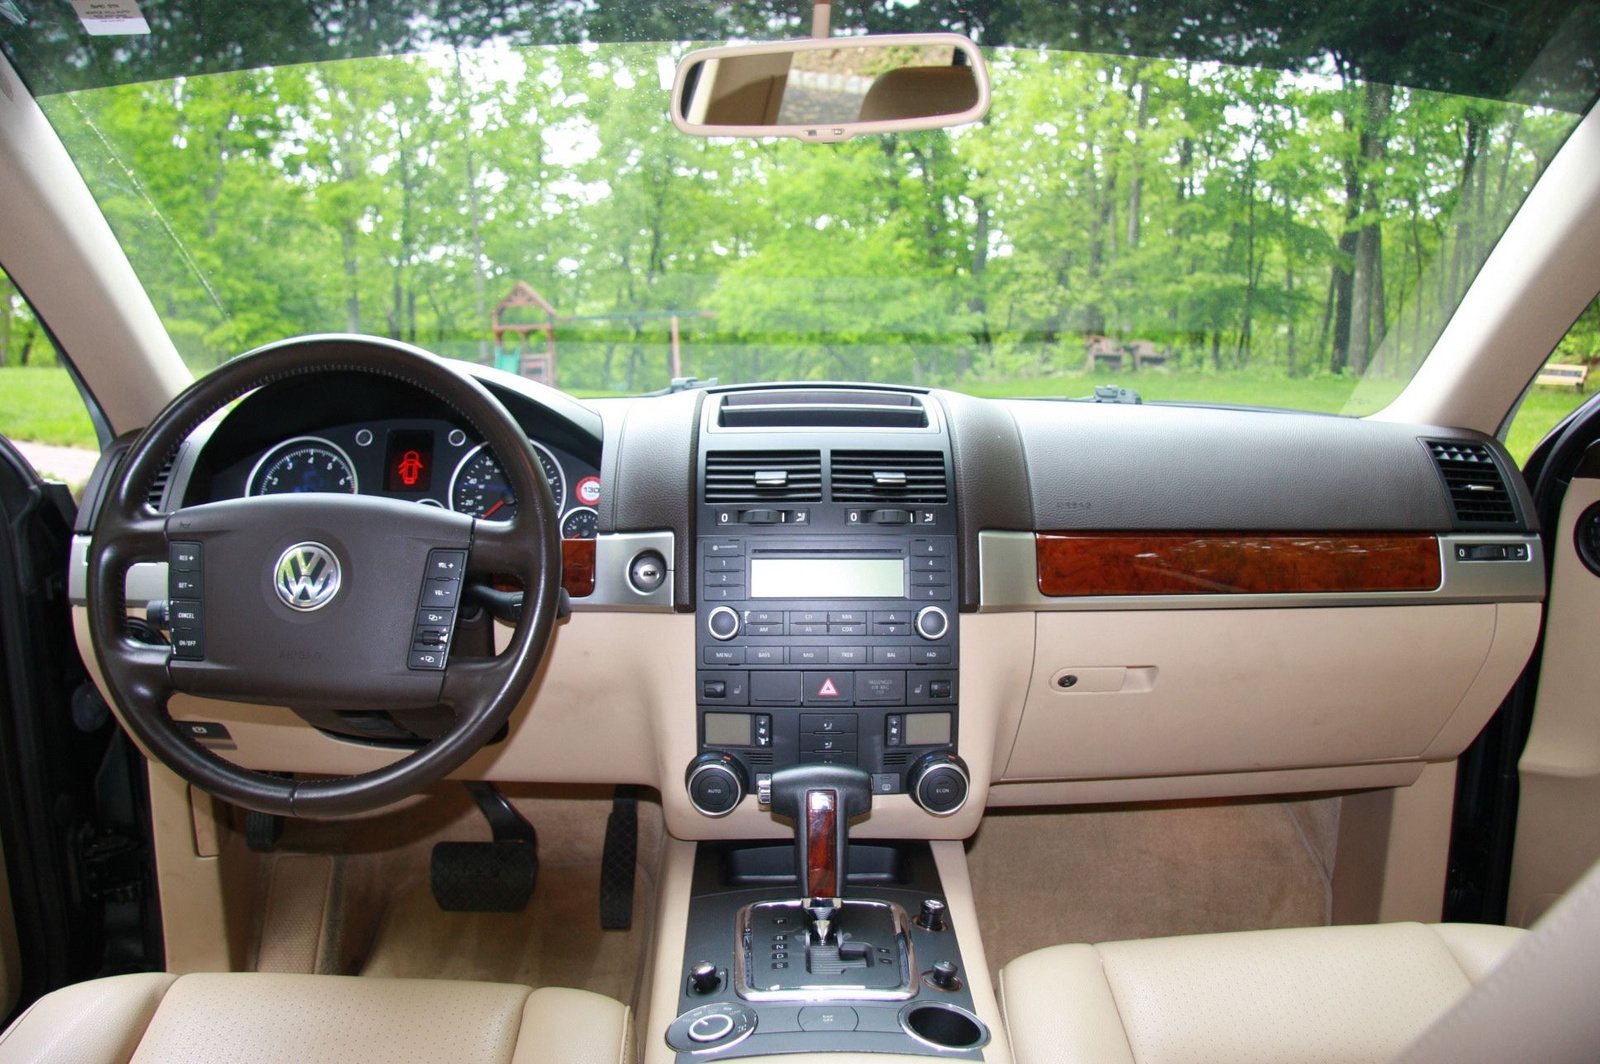 Volkswagen touareg 2004. Volkswagen Touareg 2004 Interior. Touareg 2003 3.2 салон. Volkswagen Touareg 2004 салон. Фольксваген Туарег 2004 салон.